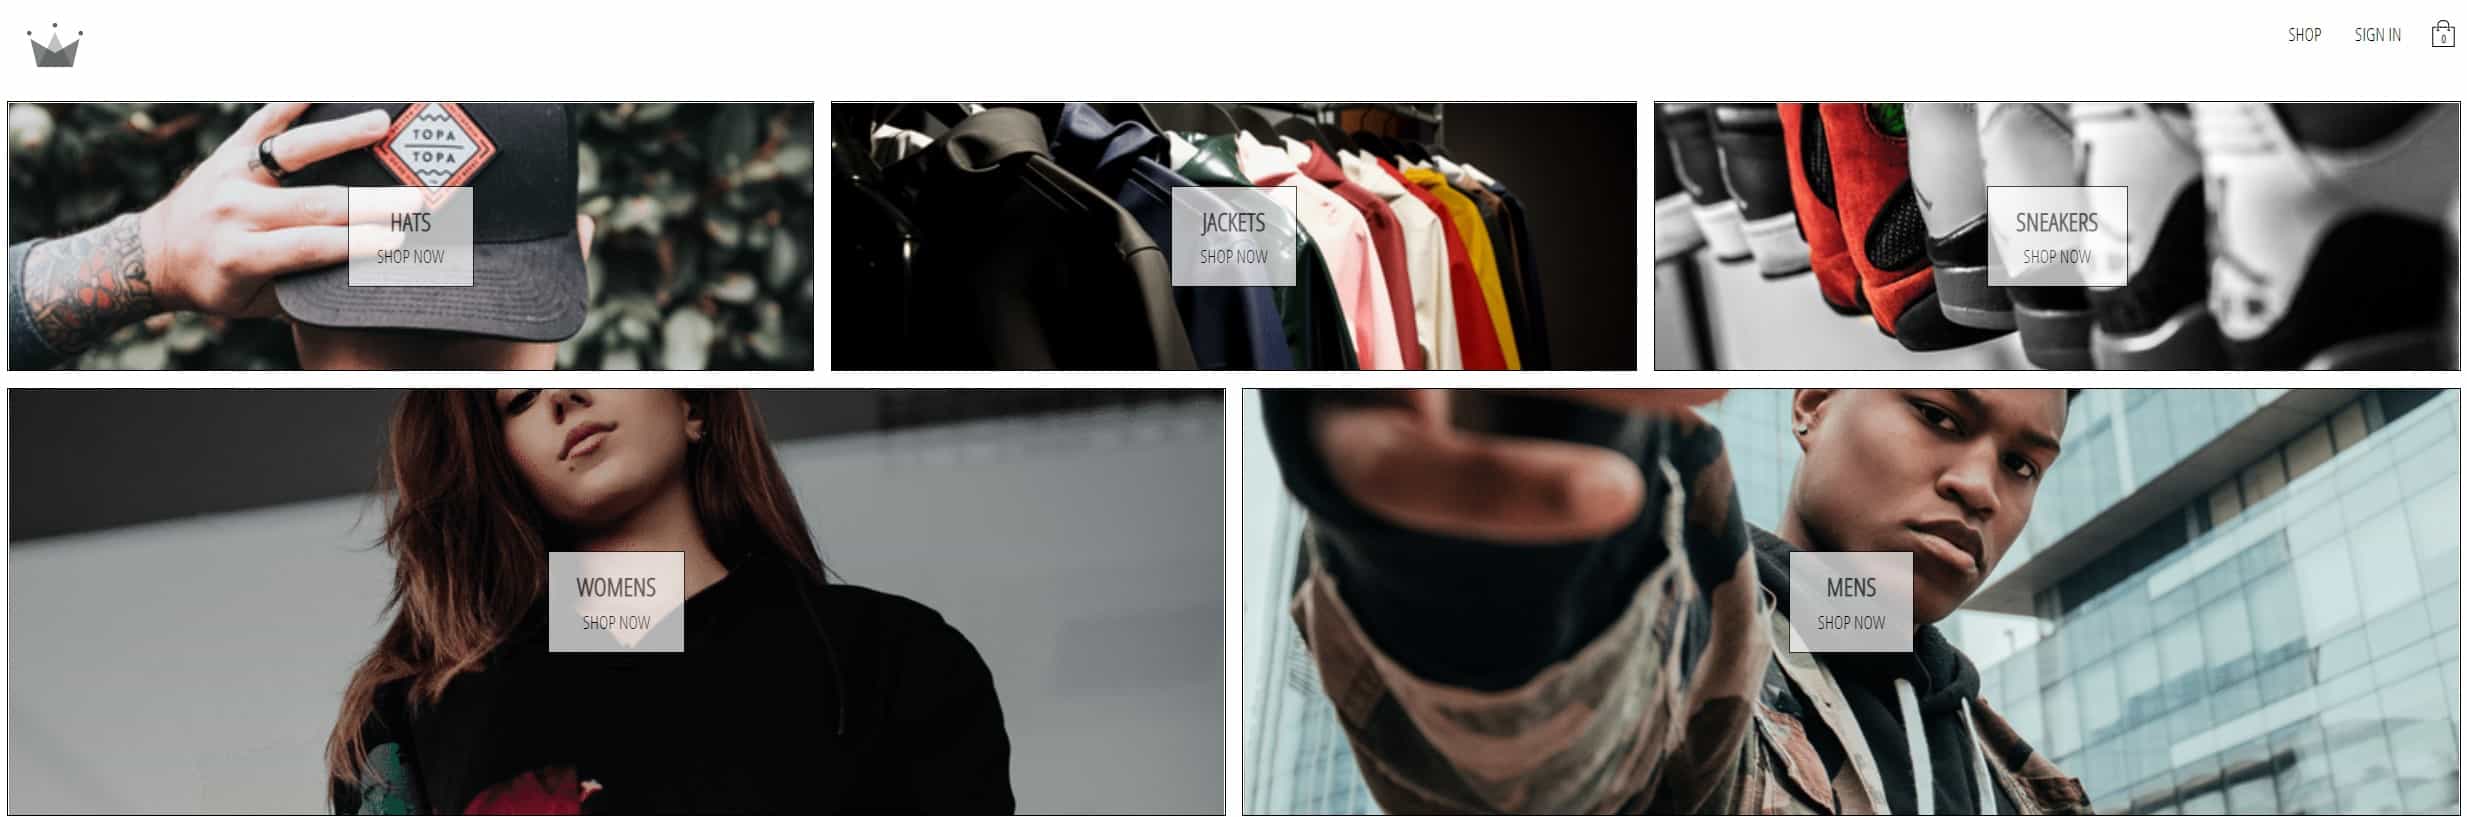 Clothing-Shop webpage image